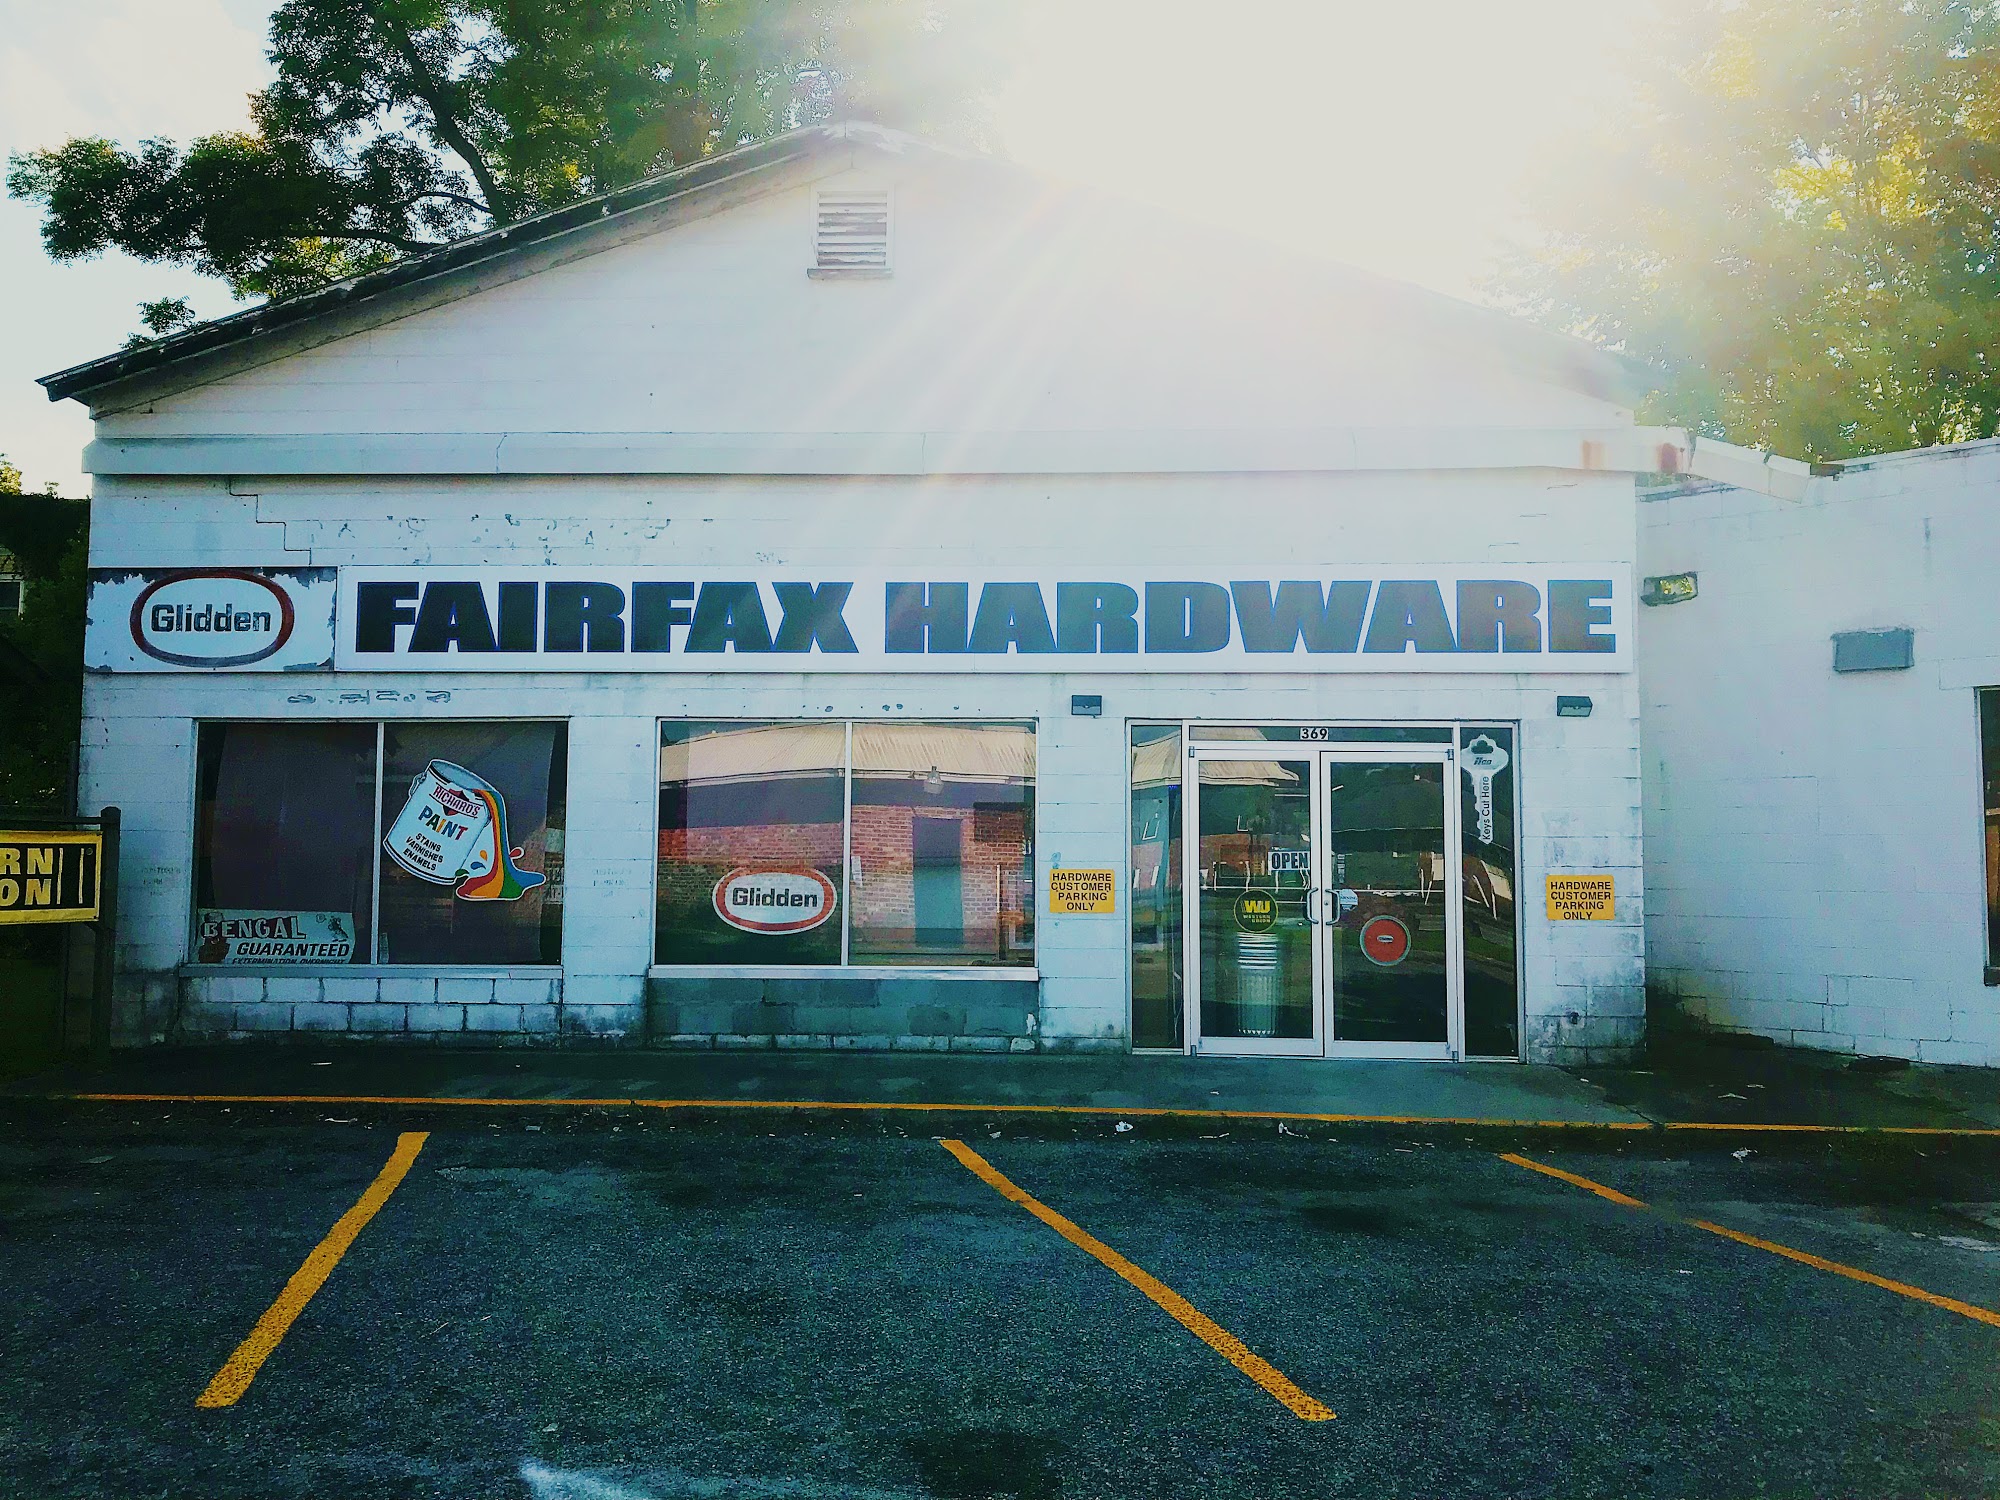 Fairfax Hardware